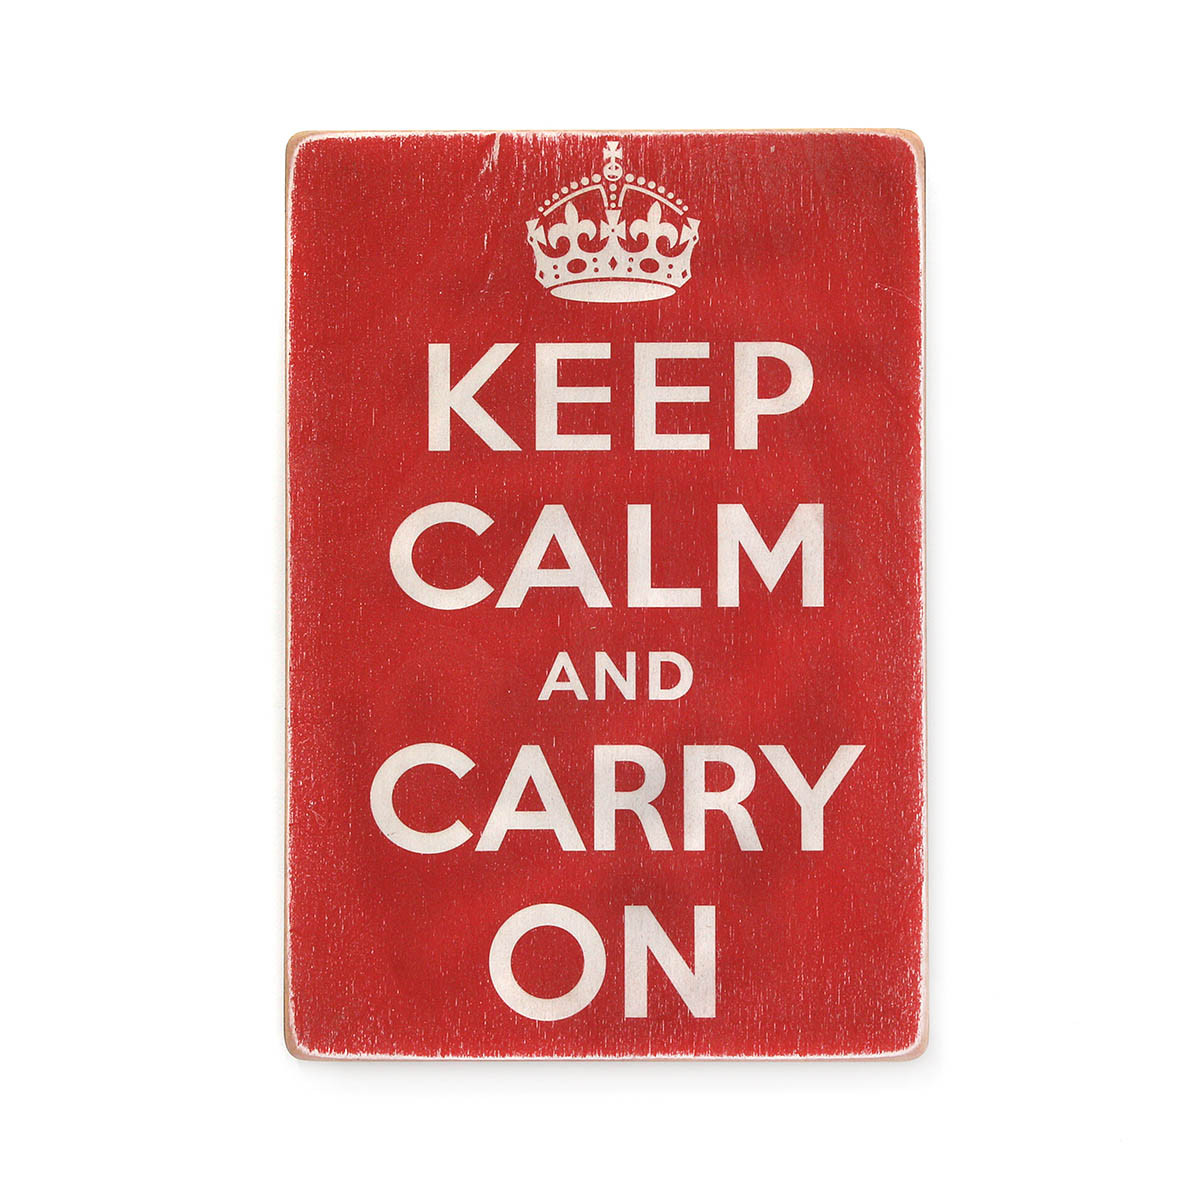 Дерев'яний постер "Keep calm and carry on"